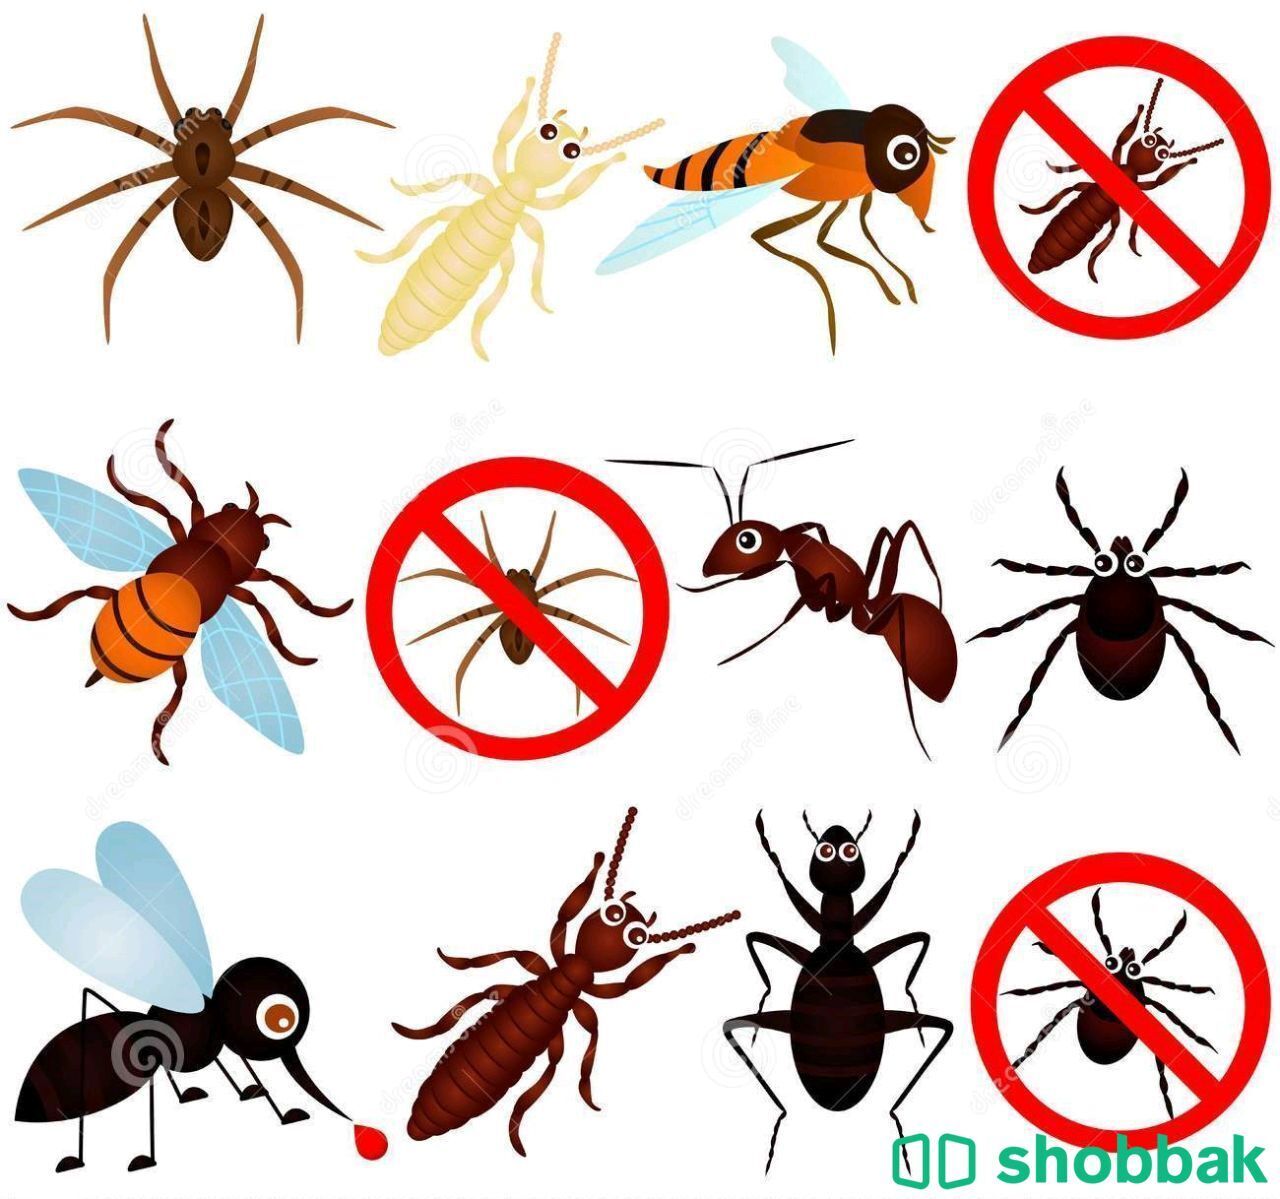 شركة مكافحة حشرات بالمدينة المنورة - 0544142976 Shobbak Saudi Arabia